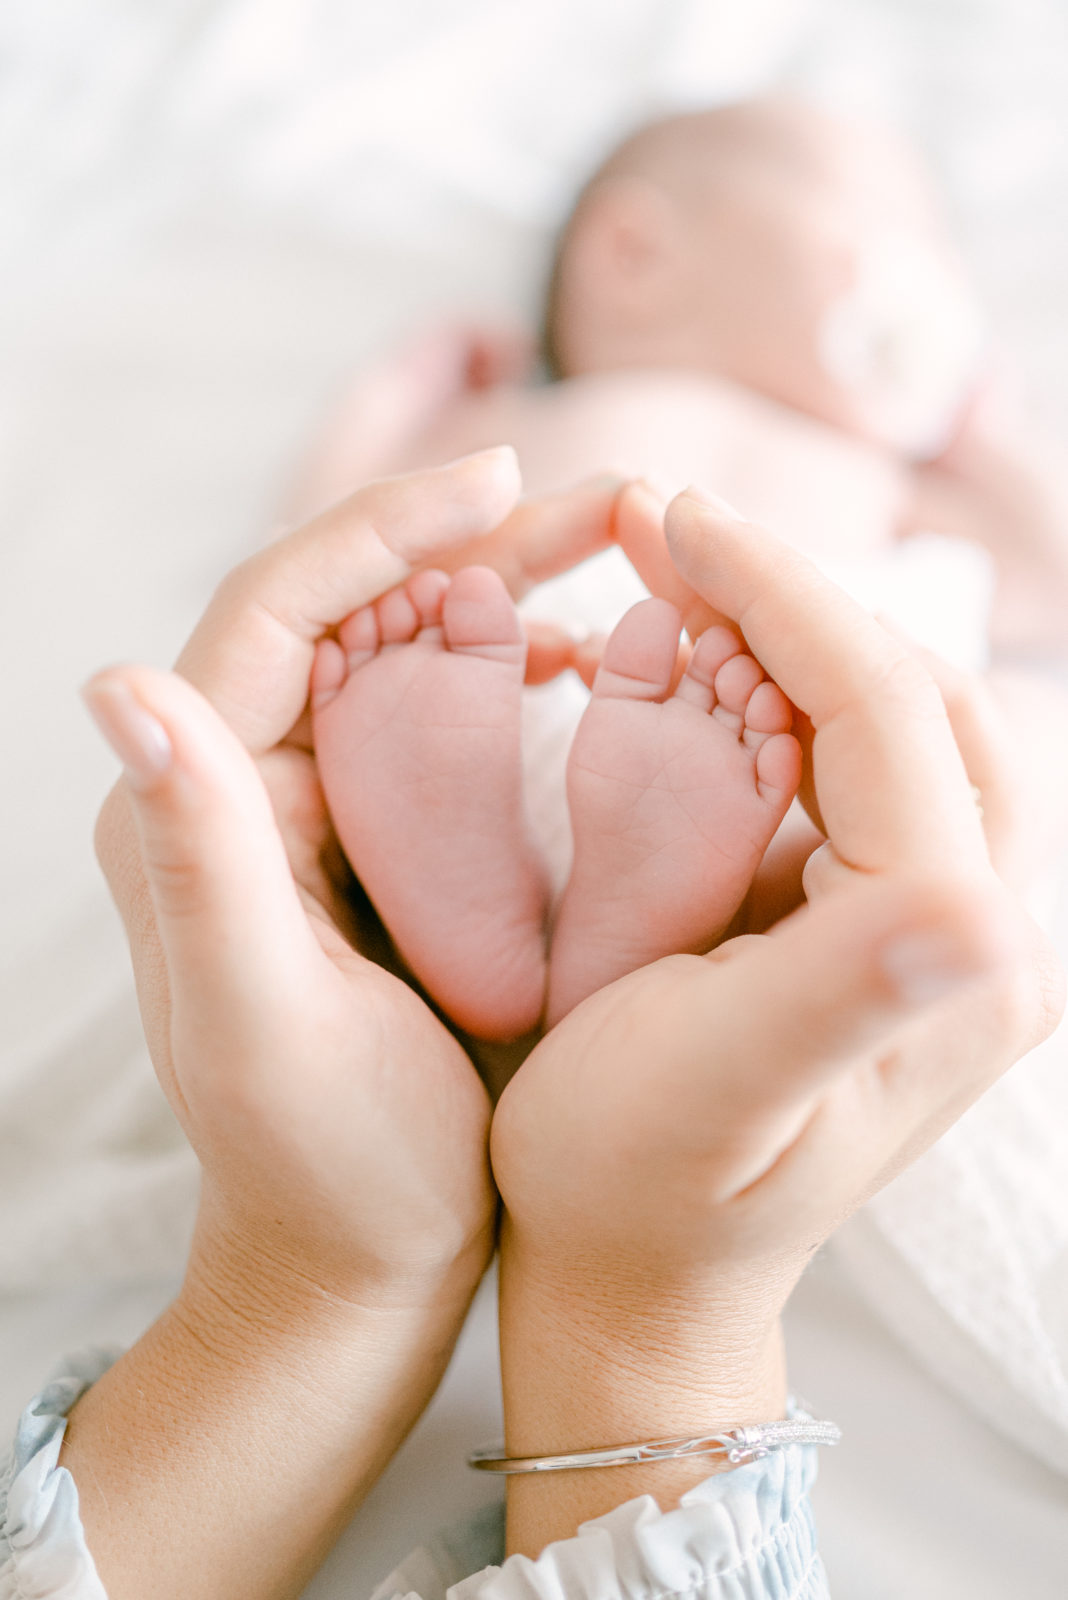 Newborn baby feet details